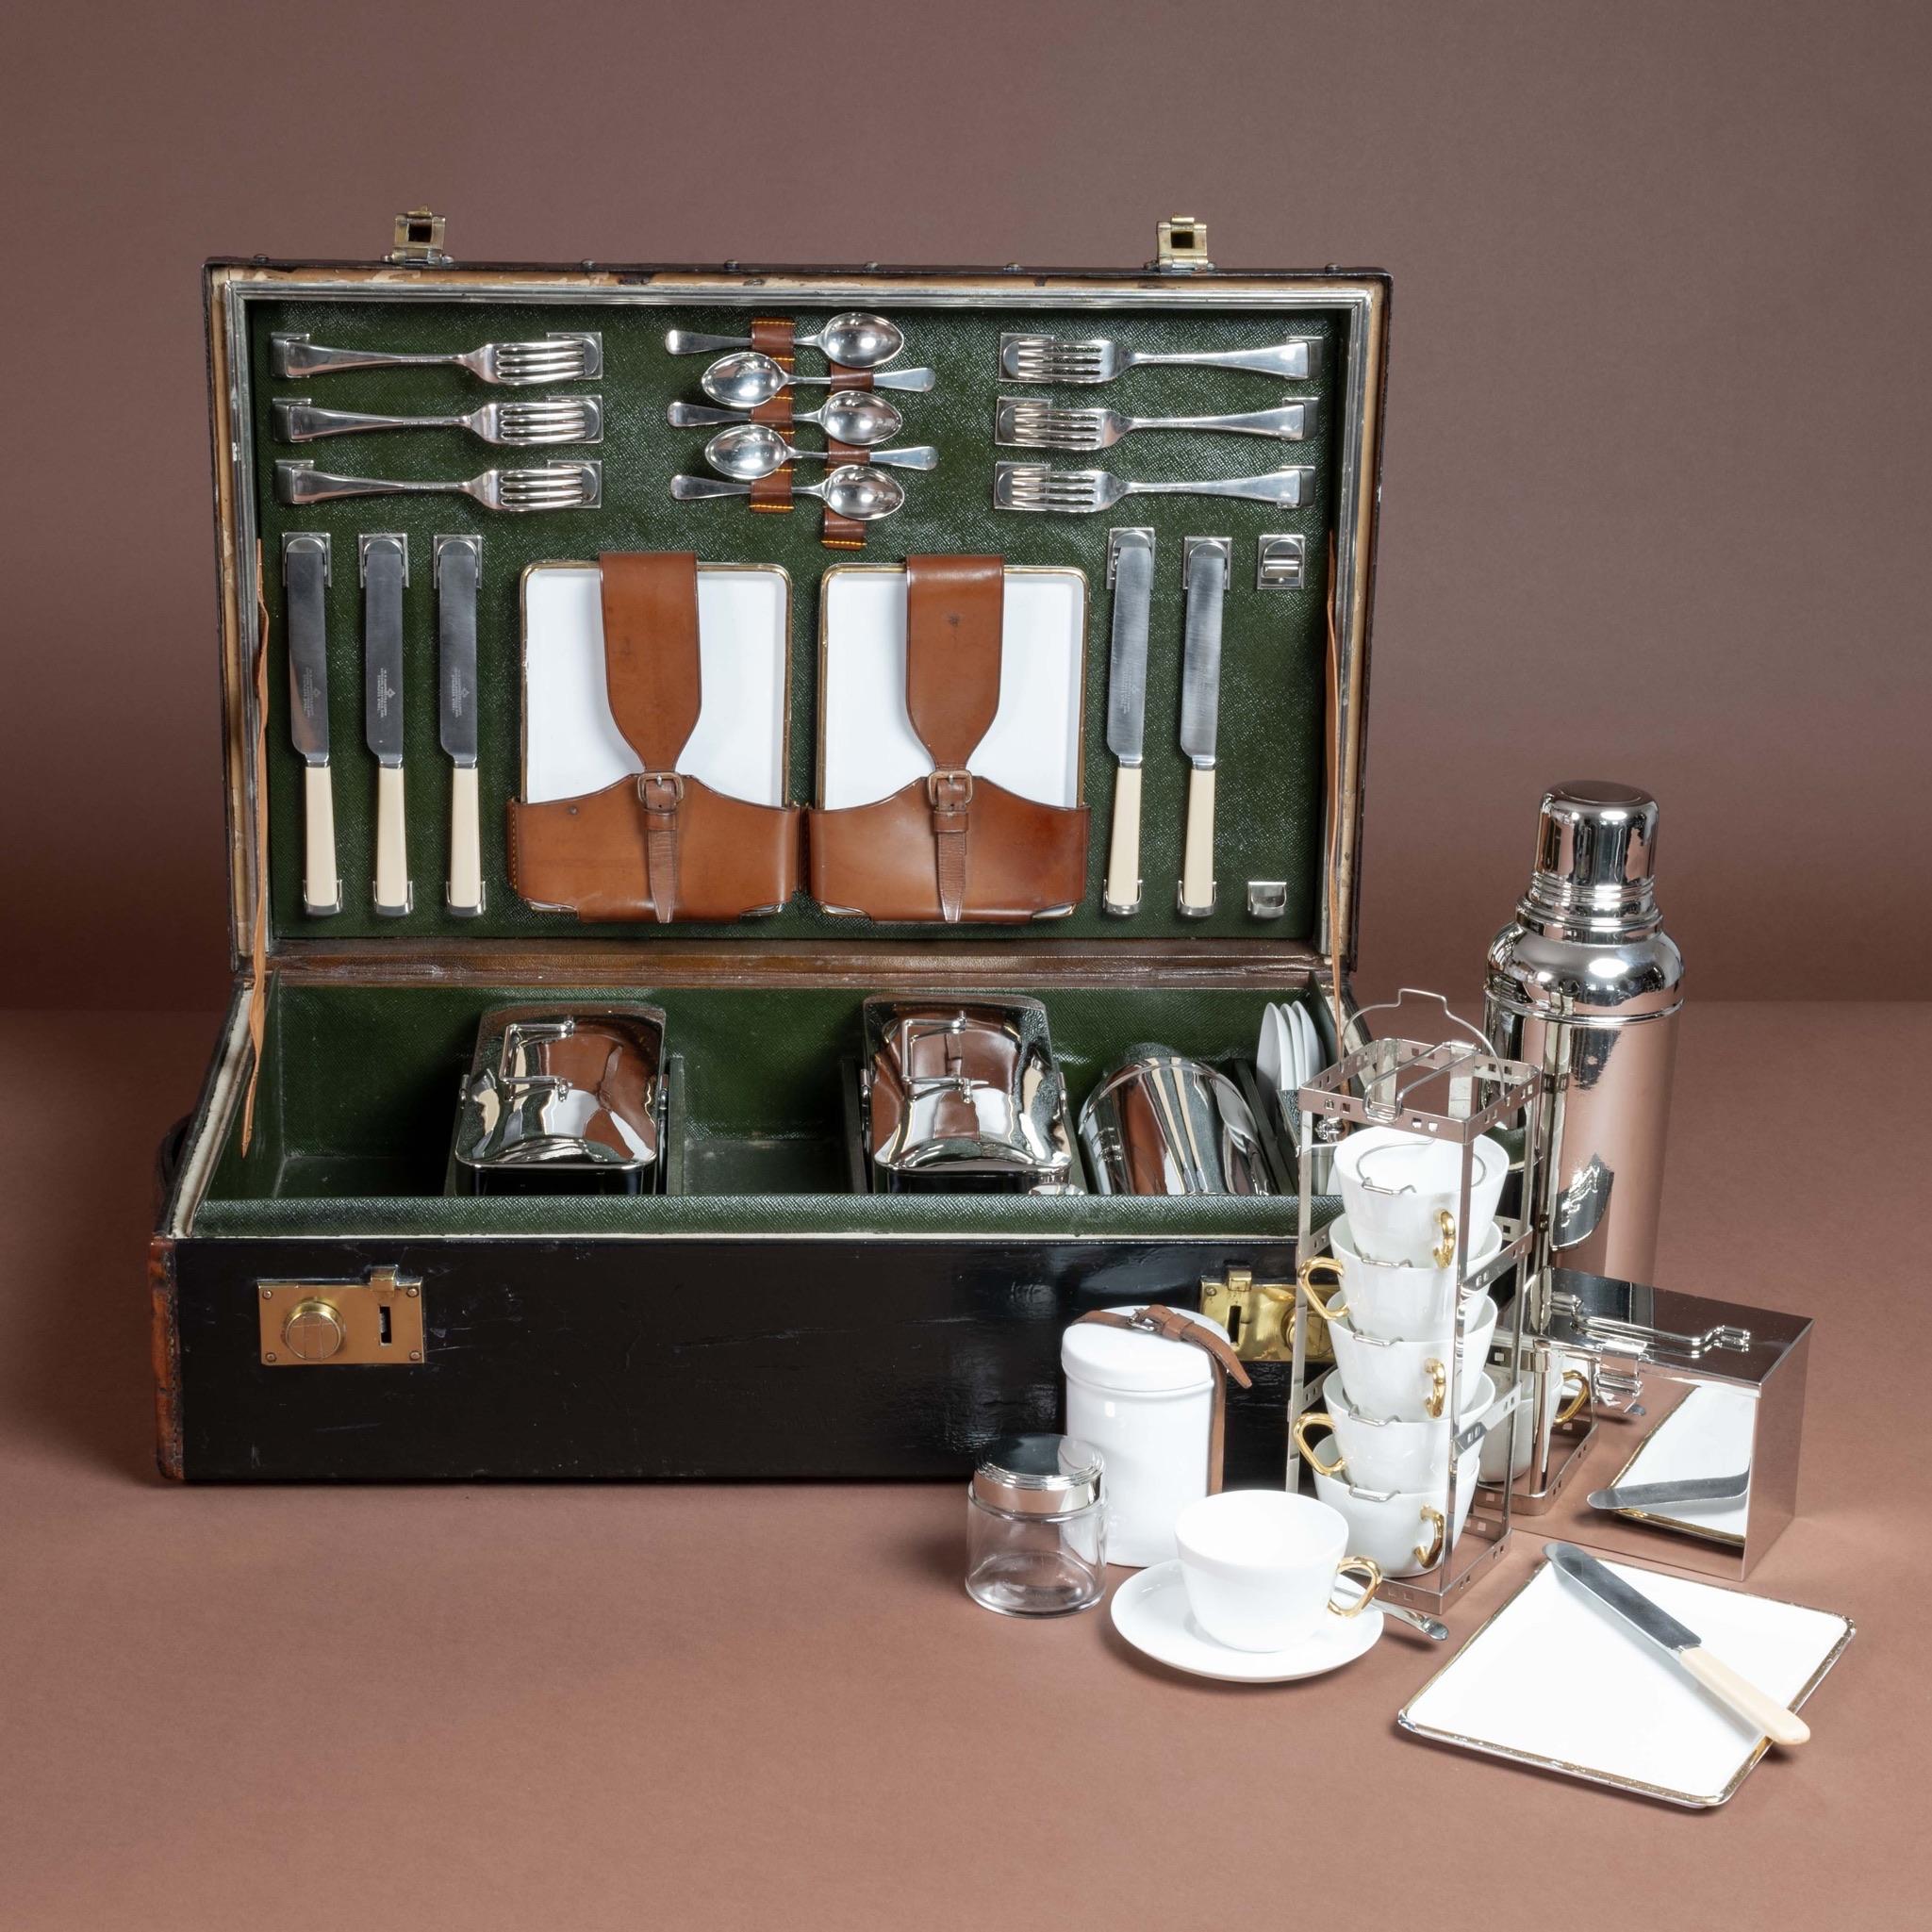 Impressionnante valise de pique-nique pour six personnes ; vers 1910. La collection comprend six assiettes en fer blanc émaillé, six tasses en céramique avec soucoupes assorties et suffisamment de couverts pour six personnes.

Il contient également